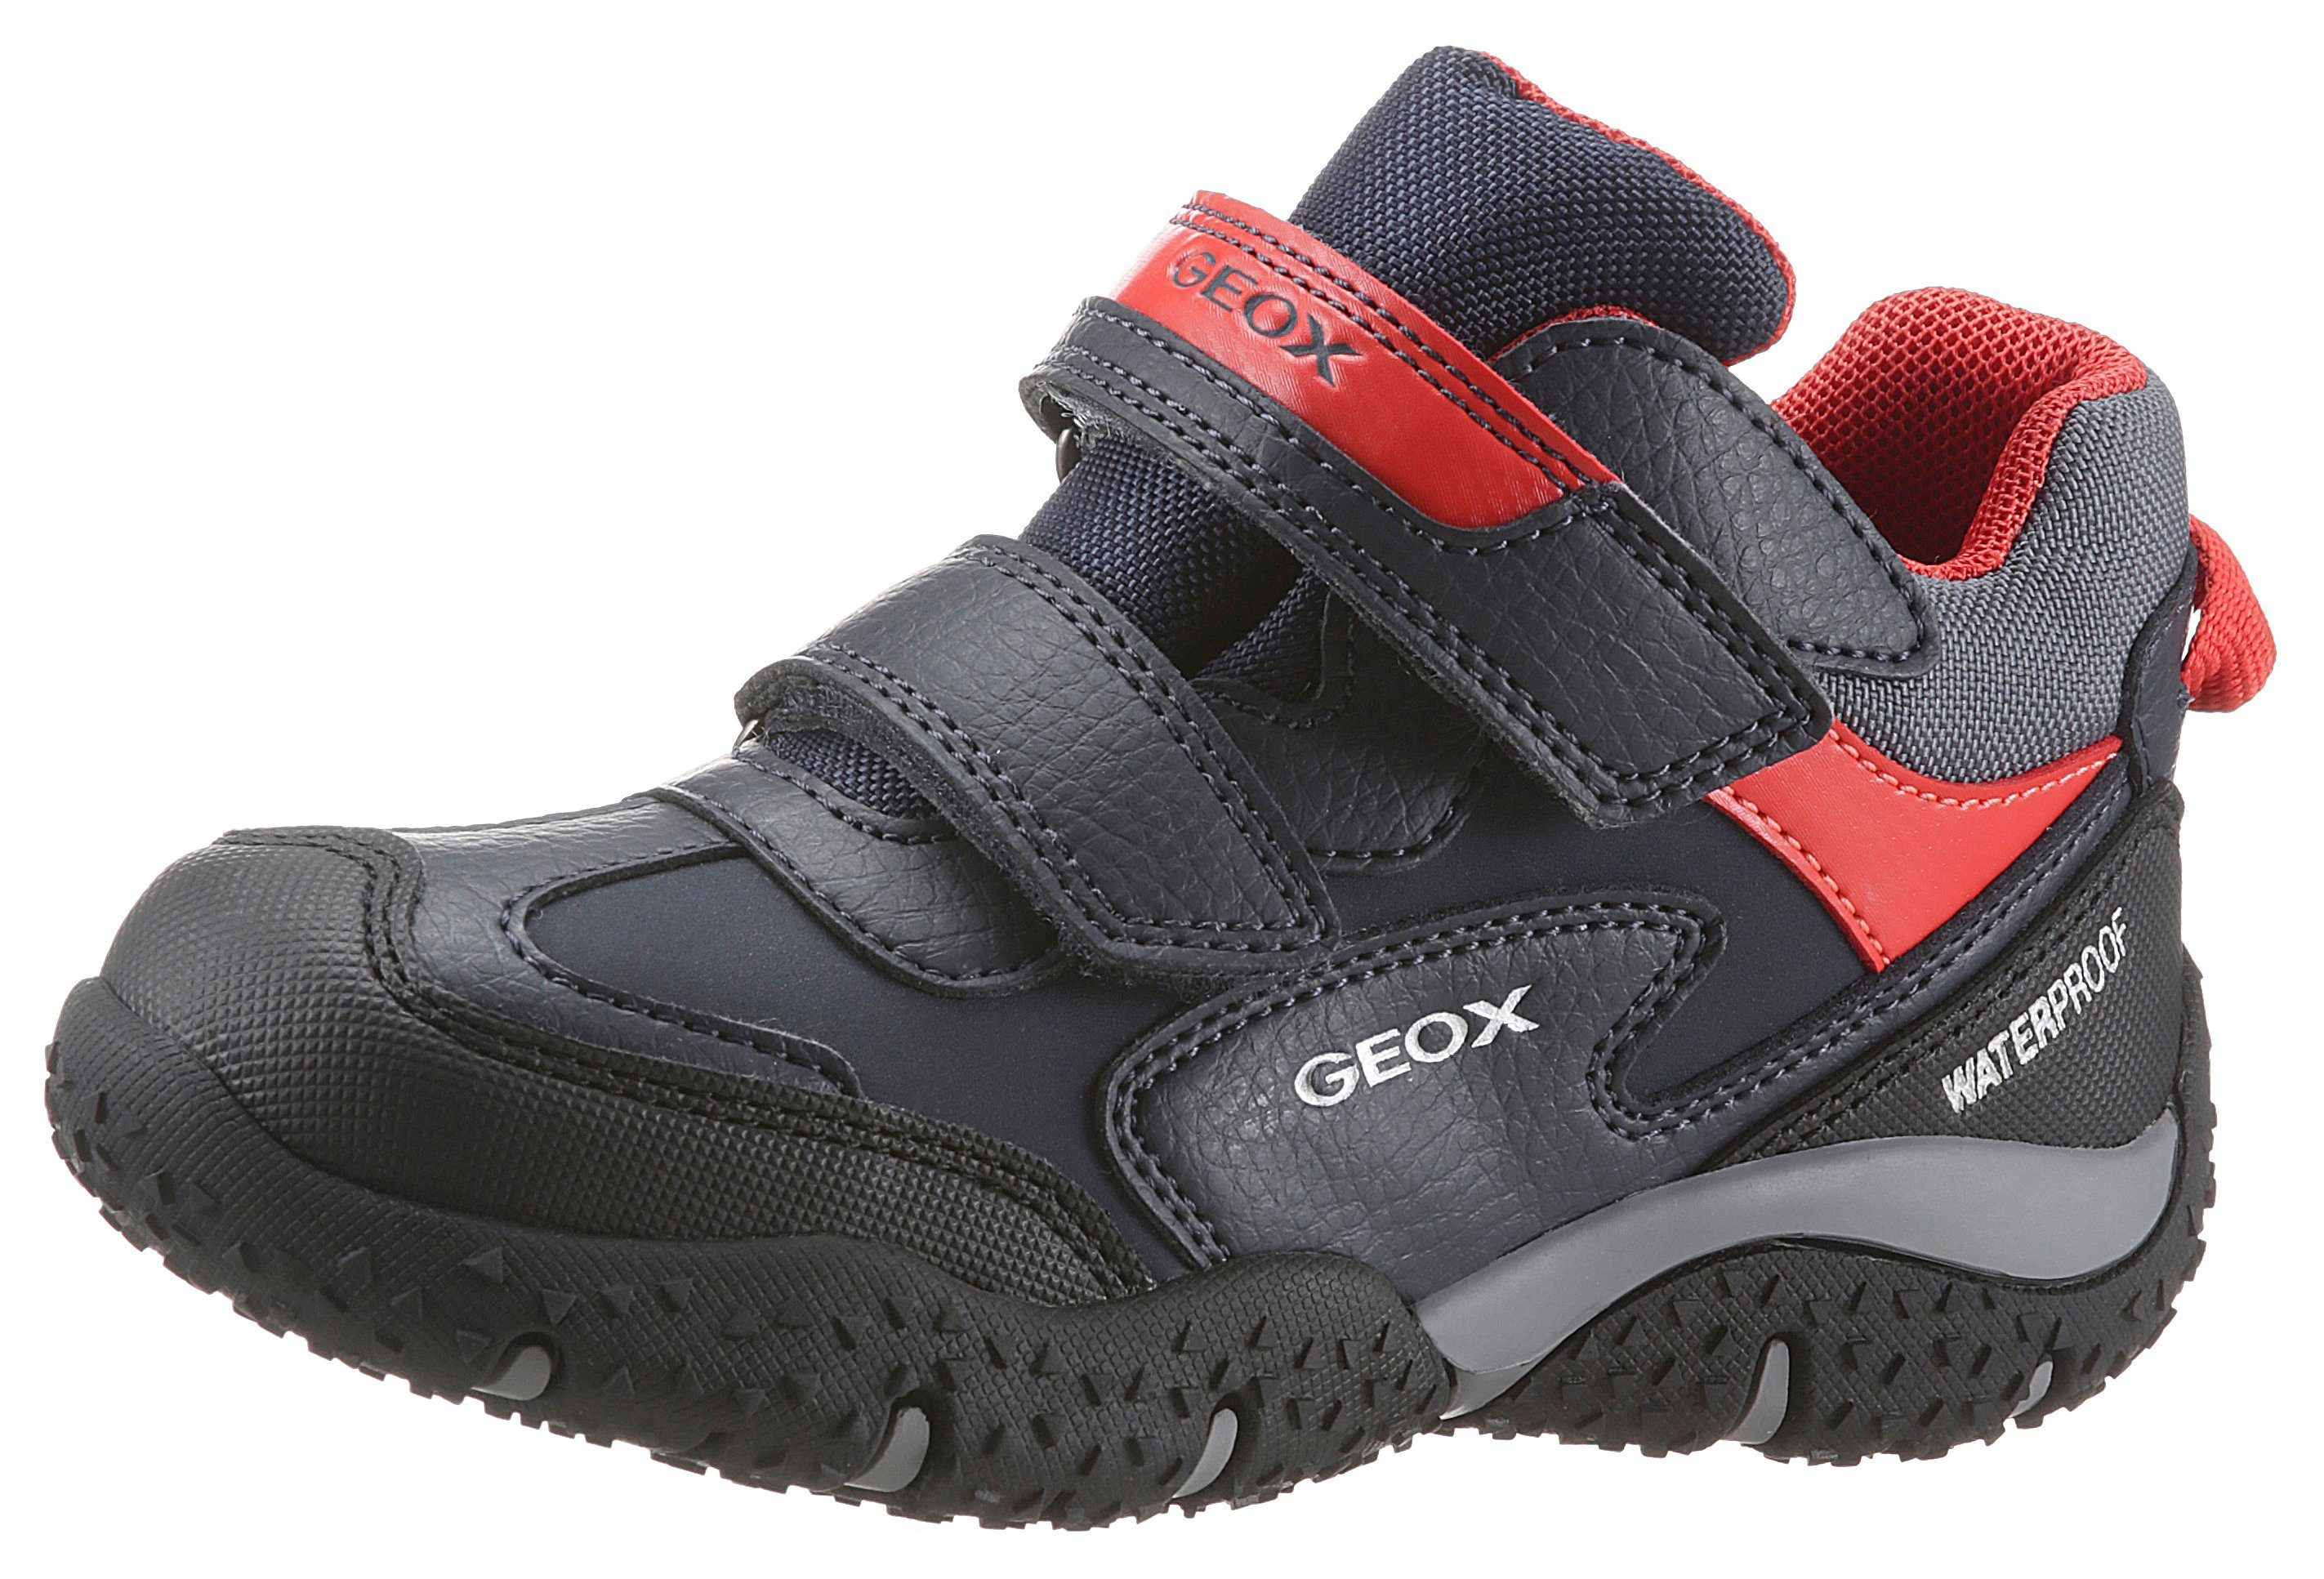 Geox Jungenschuhe » Geox Schuhmode online kaufen | OTTO